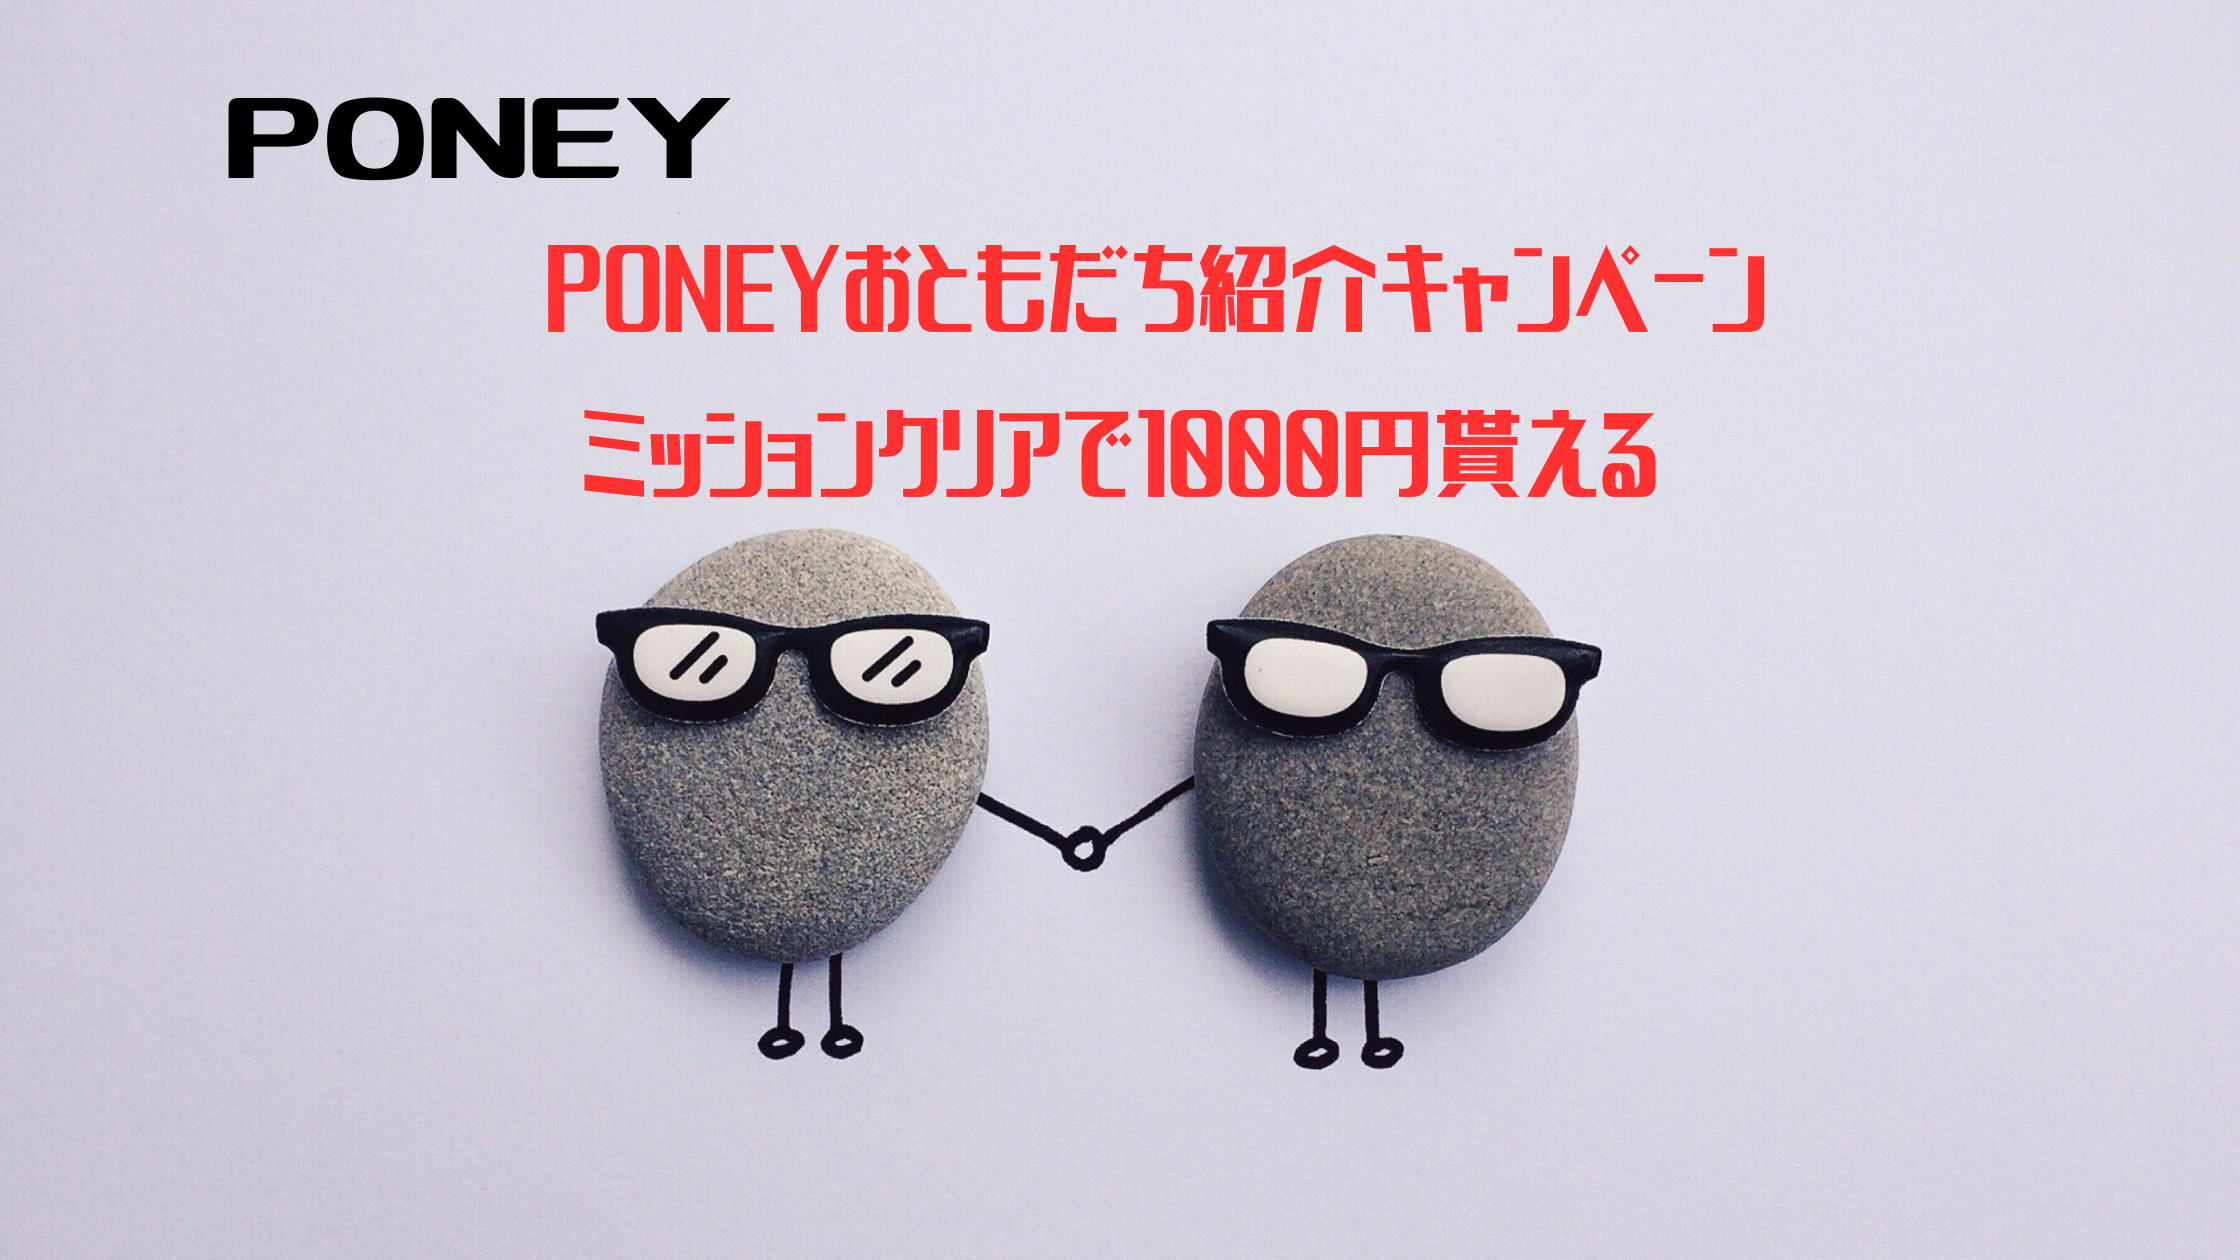 PONNEY　PONEYおともだち紹介キャンペーン、ミッションクリアで1000円もらえる